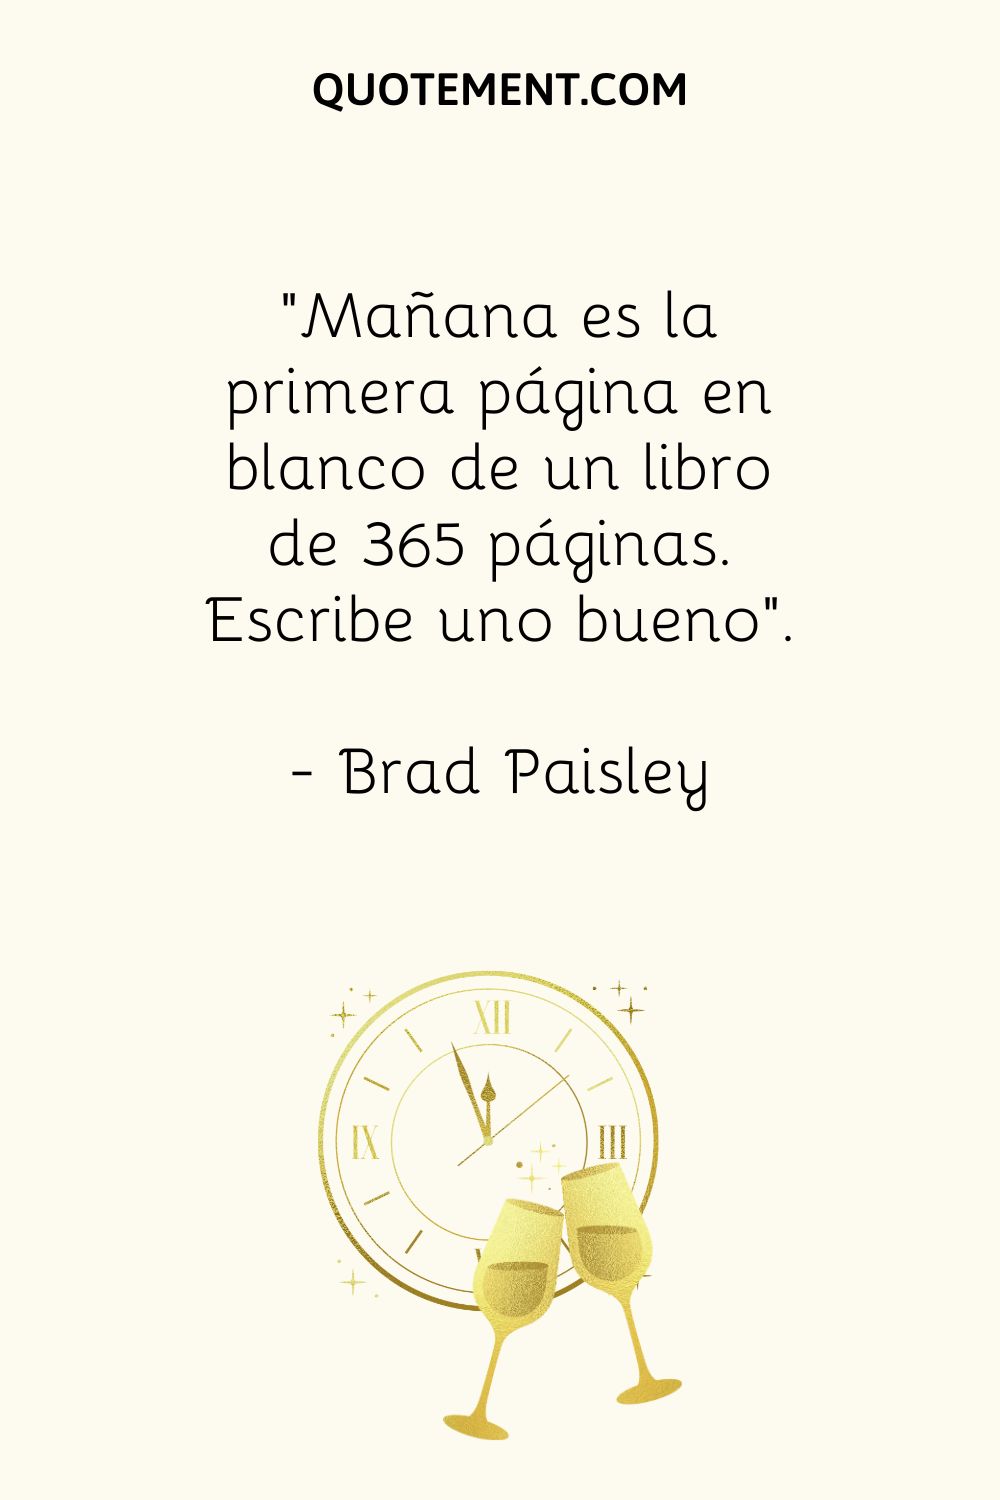 "Mañana es la primera página en blanco de un libro de 365 páginas. Escribe uno bueno". - Brad Paisley